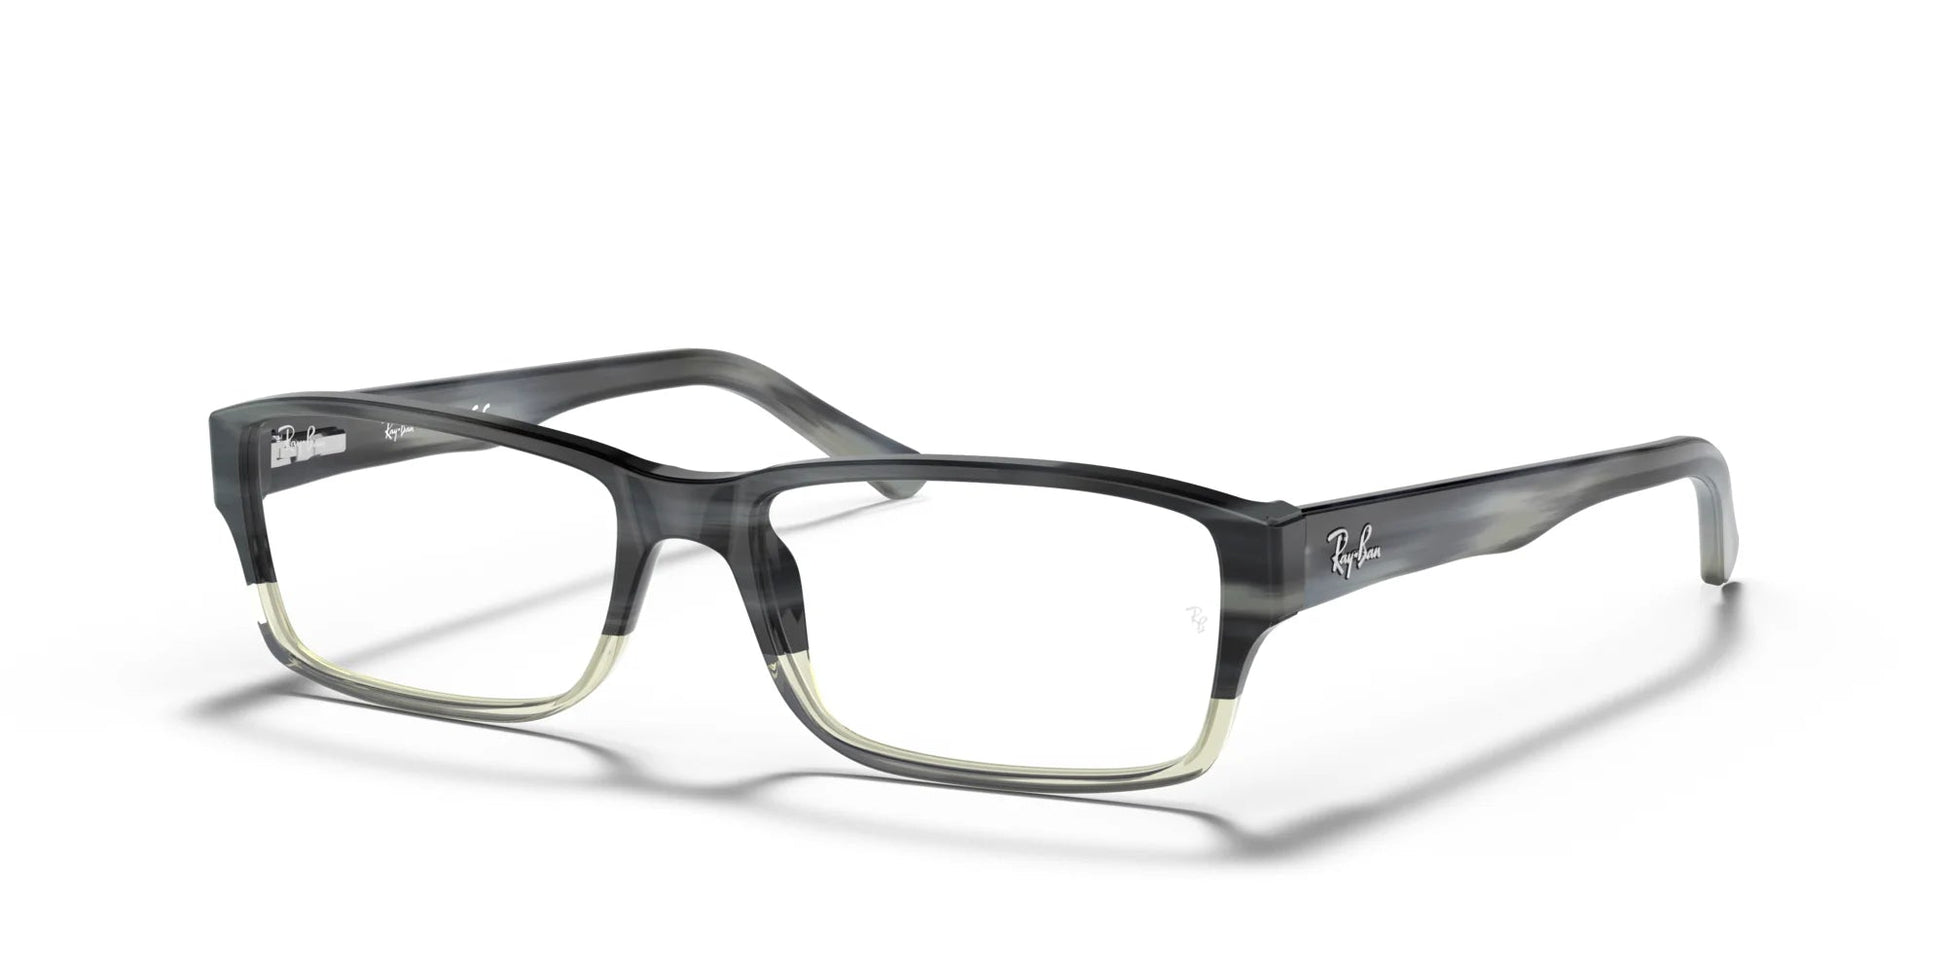 Ray-Ban RX5169 Eyeglasses Grey / Clear